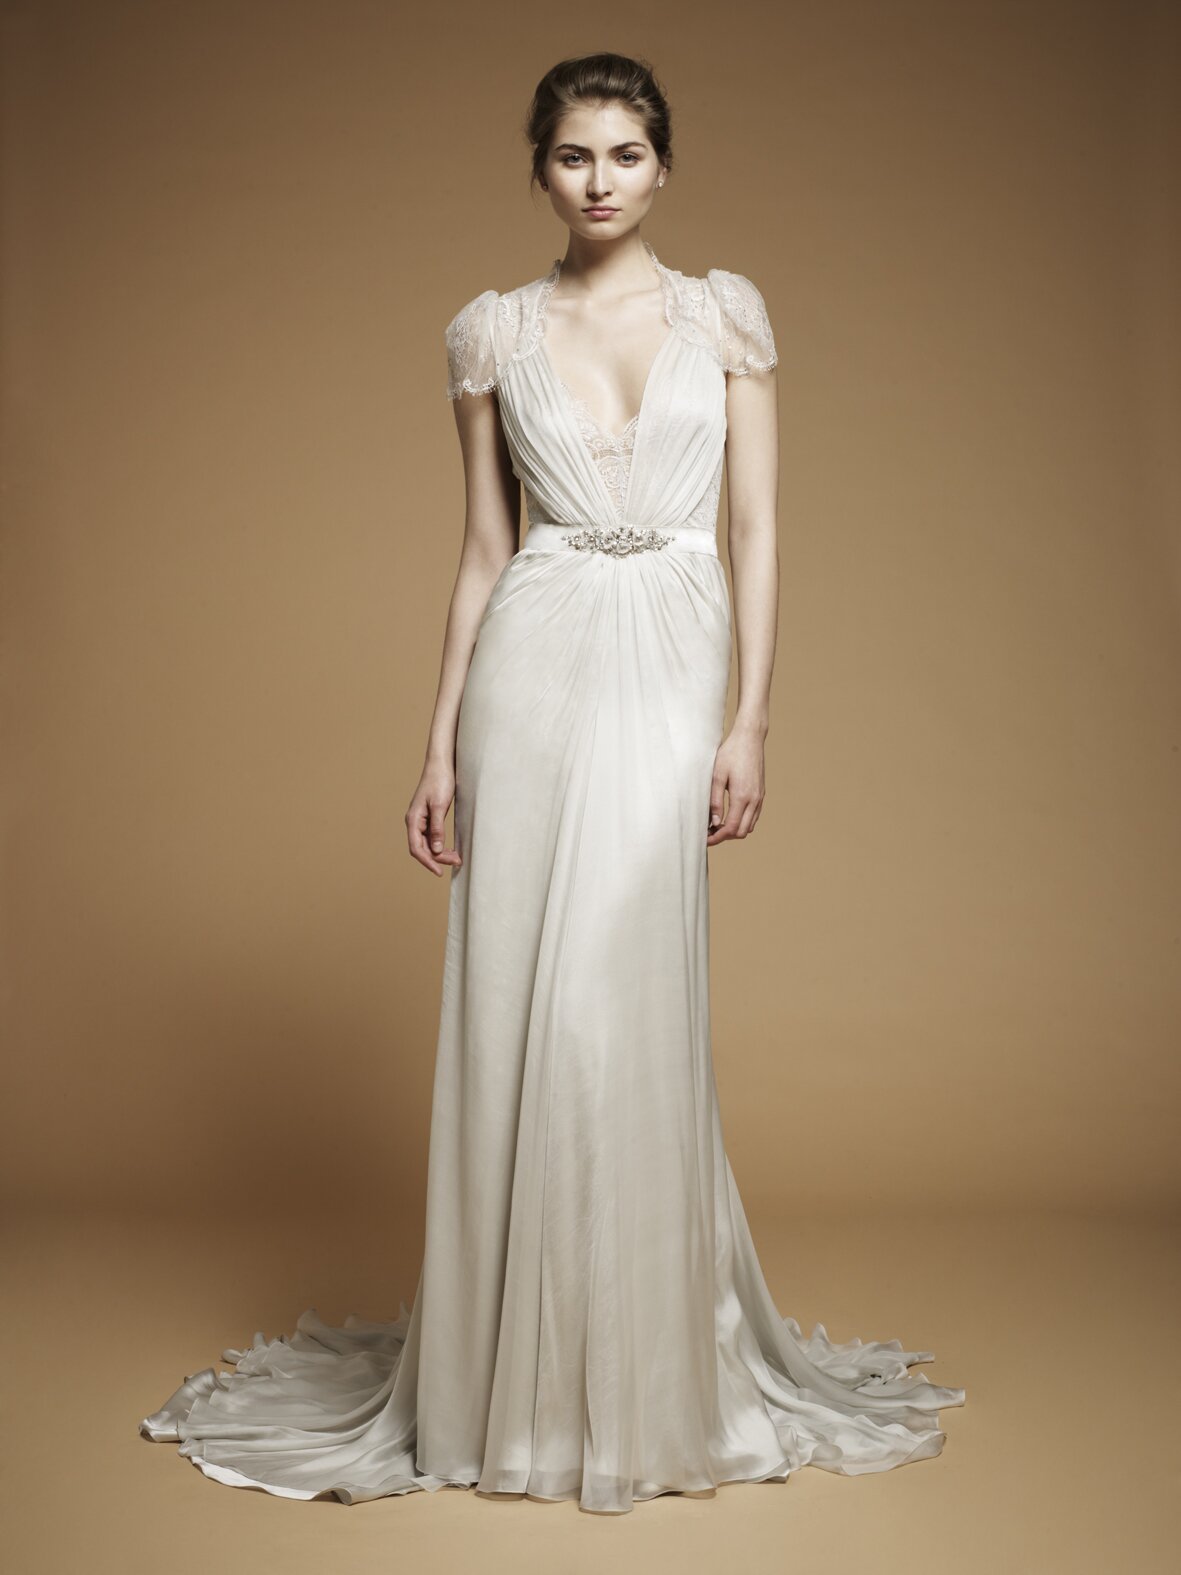 Jenny Packham inspired wedding dresses Photo - 8